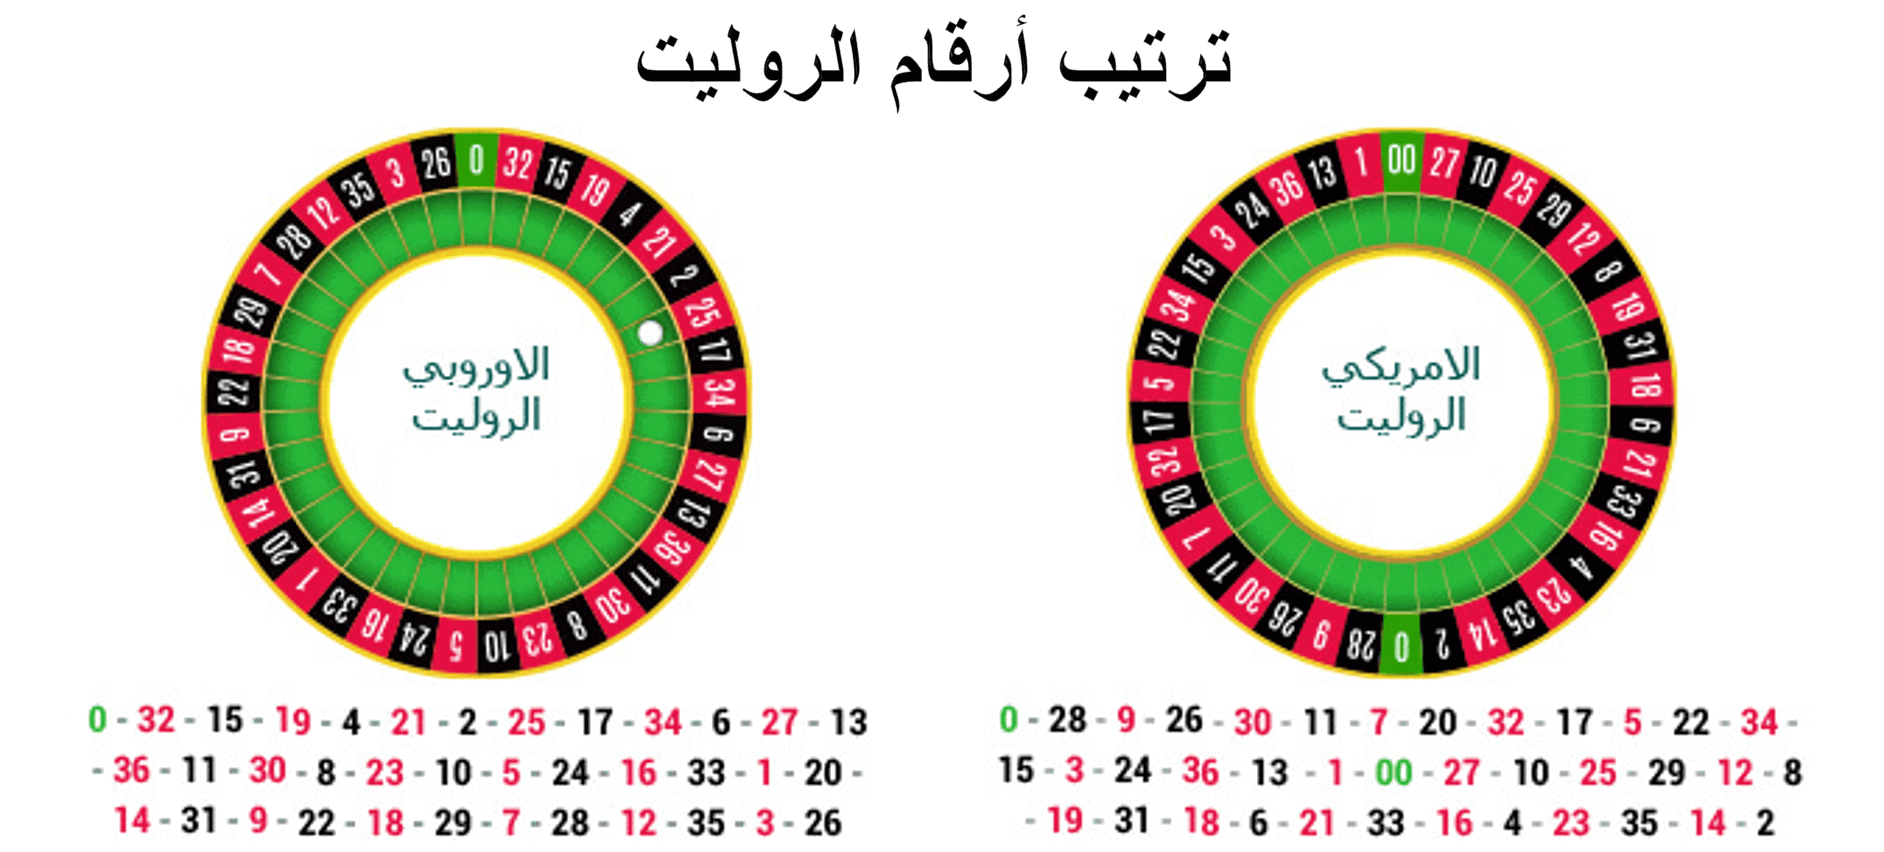 اللاعبين السعوديين - 37094